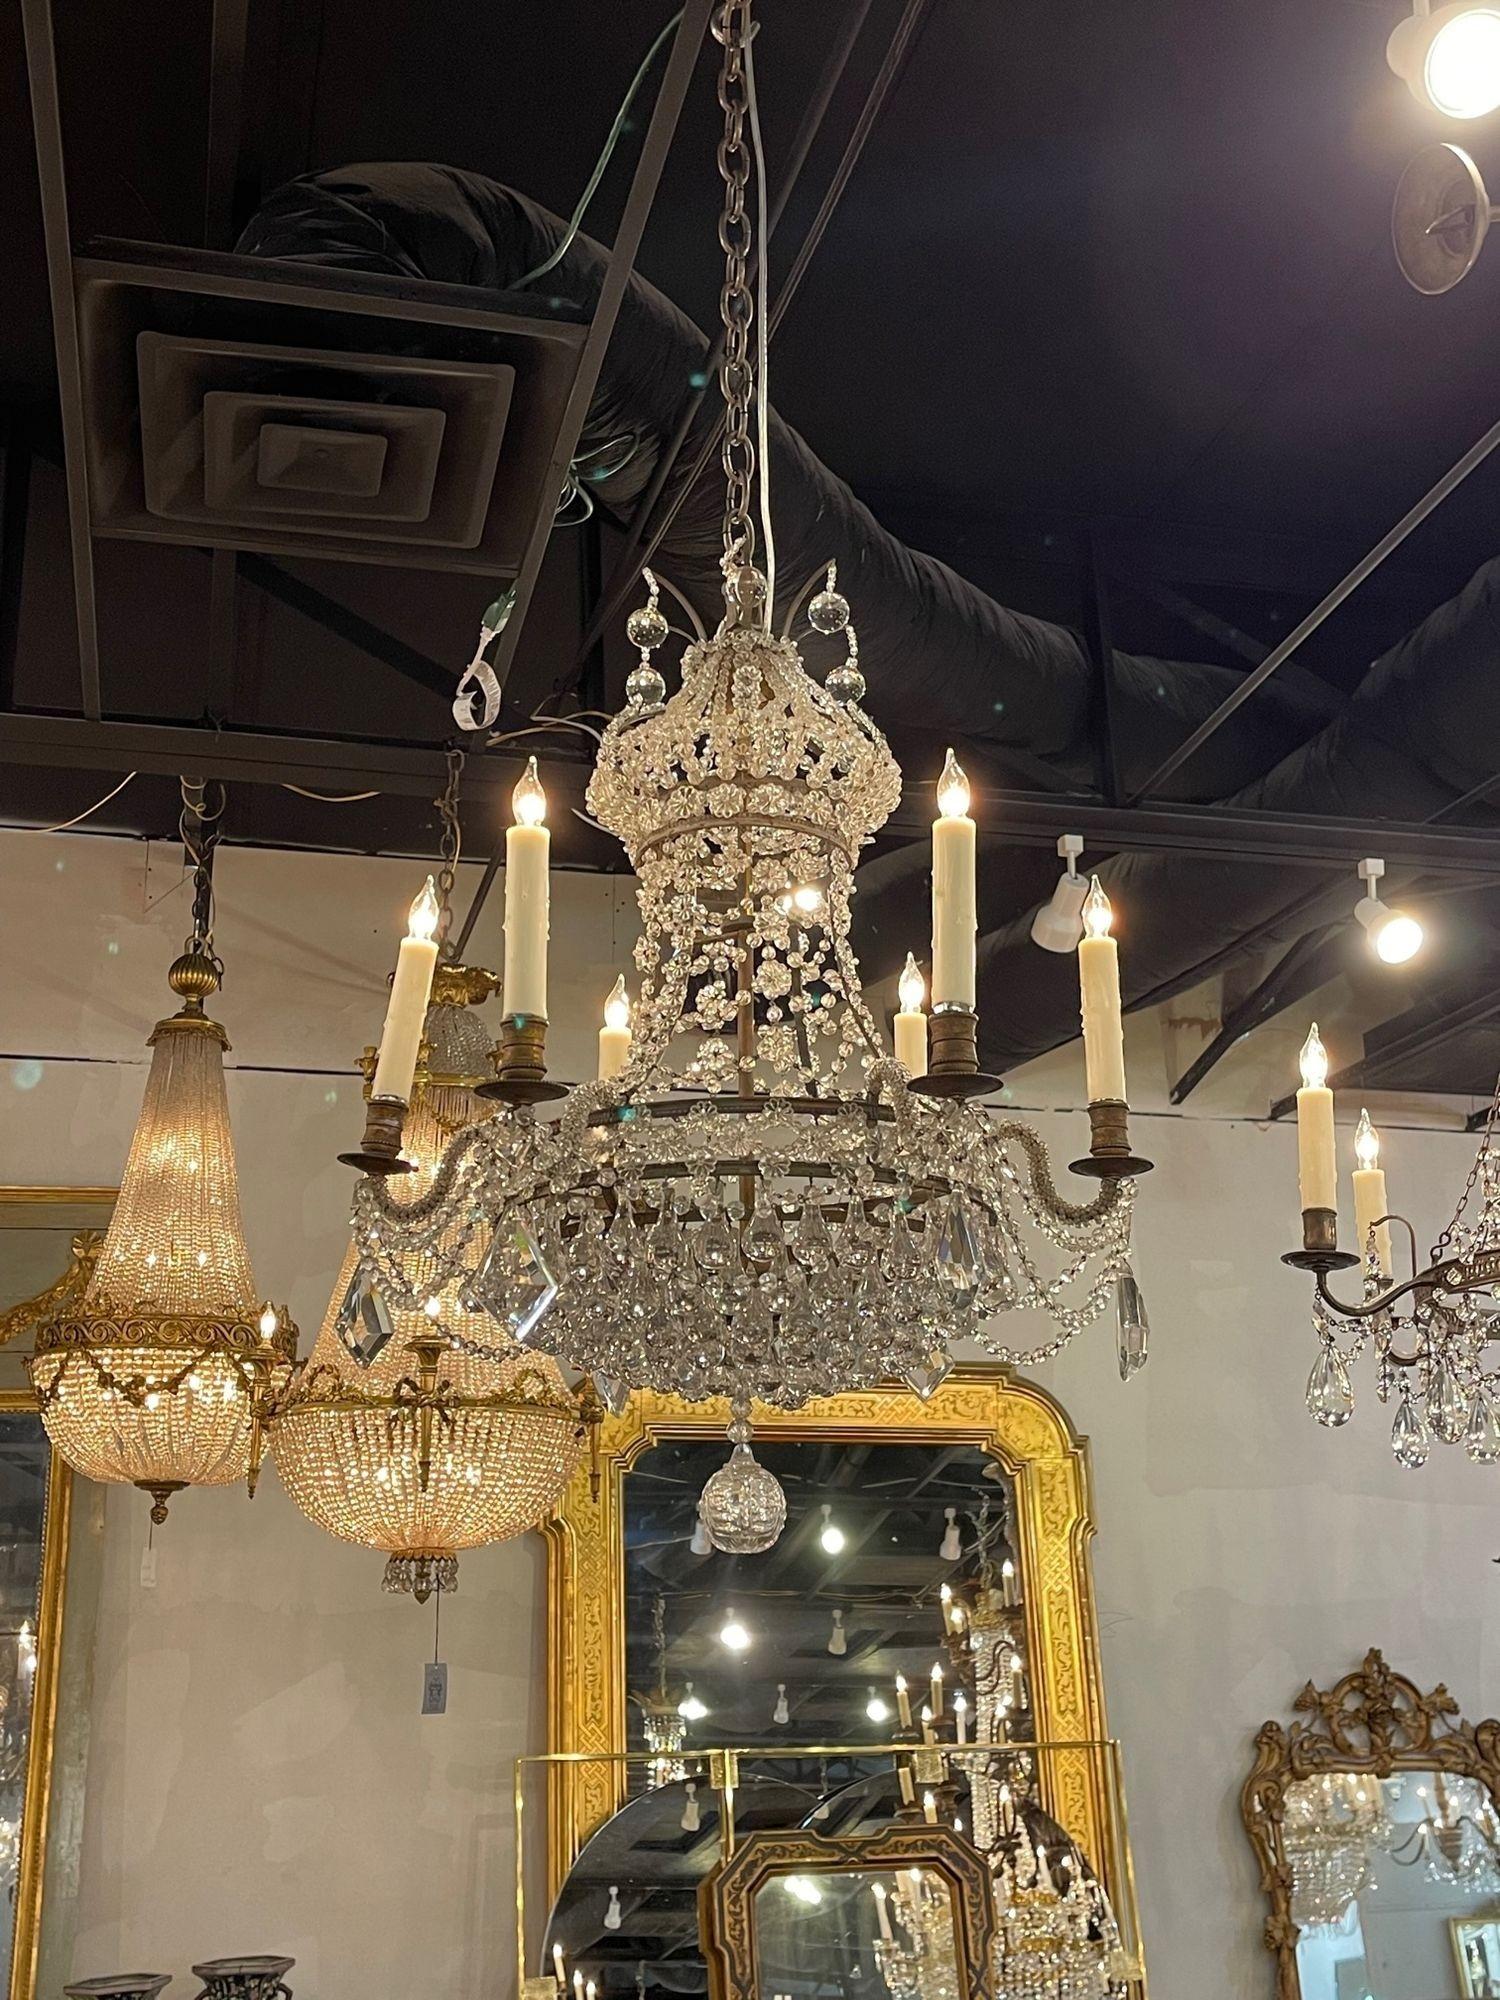 Très beau lustre vintage français Bagues en bronze et perles avec 6 lumières. De superbes perles et cristaux, dont certains en forme de fleur. Jolie échelle et forme sur cette pièce aussi. Exquis !

